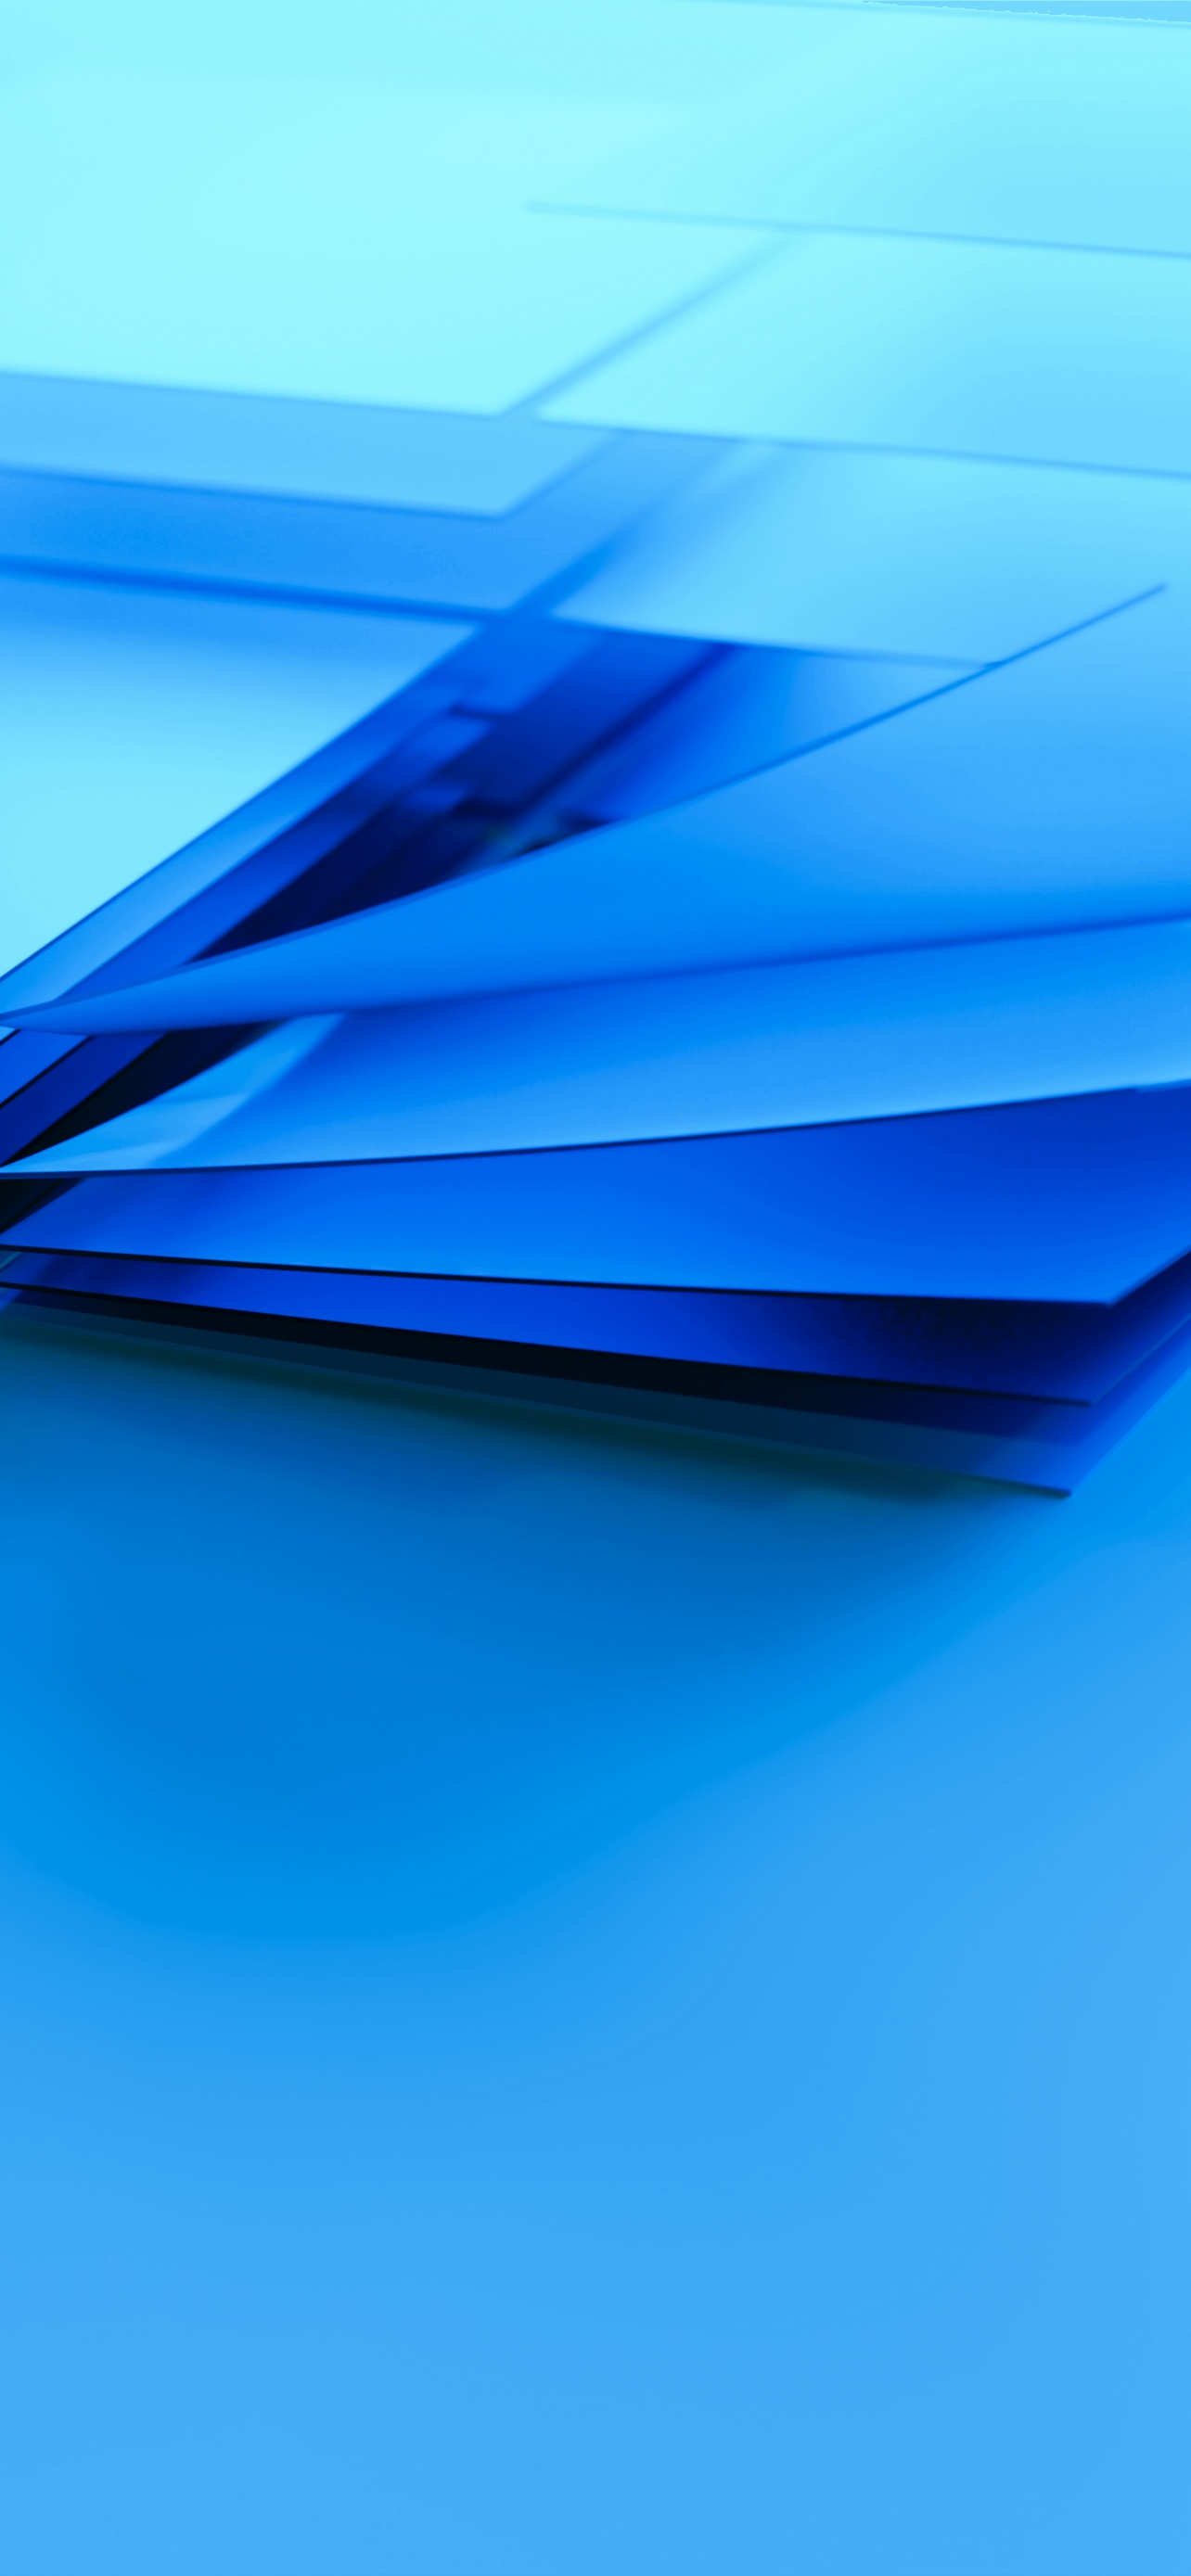 Các bạn đam mê công nghệ và thích sử dụng Windows chắc chắn sẽ không muốn bỏ qua bộ hình nền Windows 4K với độ phân giải cao và màu xanh độc đáo này. Với nhiều hình ảnh trừu tượng mang tính nghệ thuật, đây là lựa chọn hoàn hảo để tạo không gian làm việc thật đẹp và độc đáo trên máy tính của bạn. Hãy cùng xem ngay nhé!